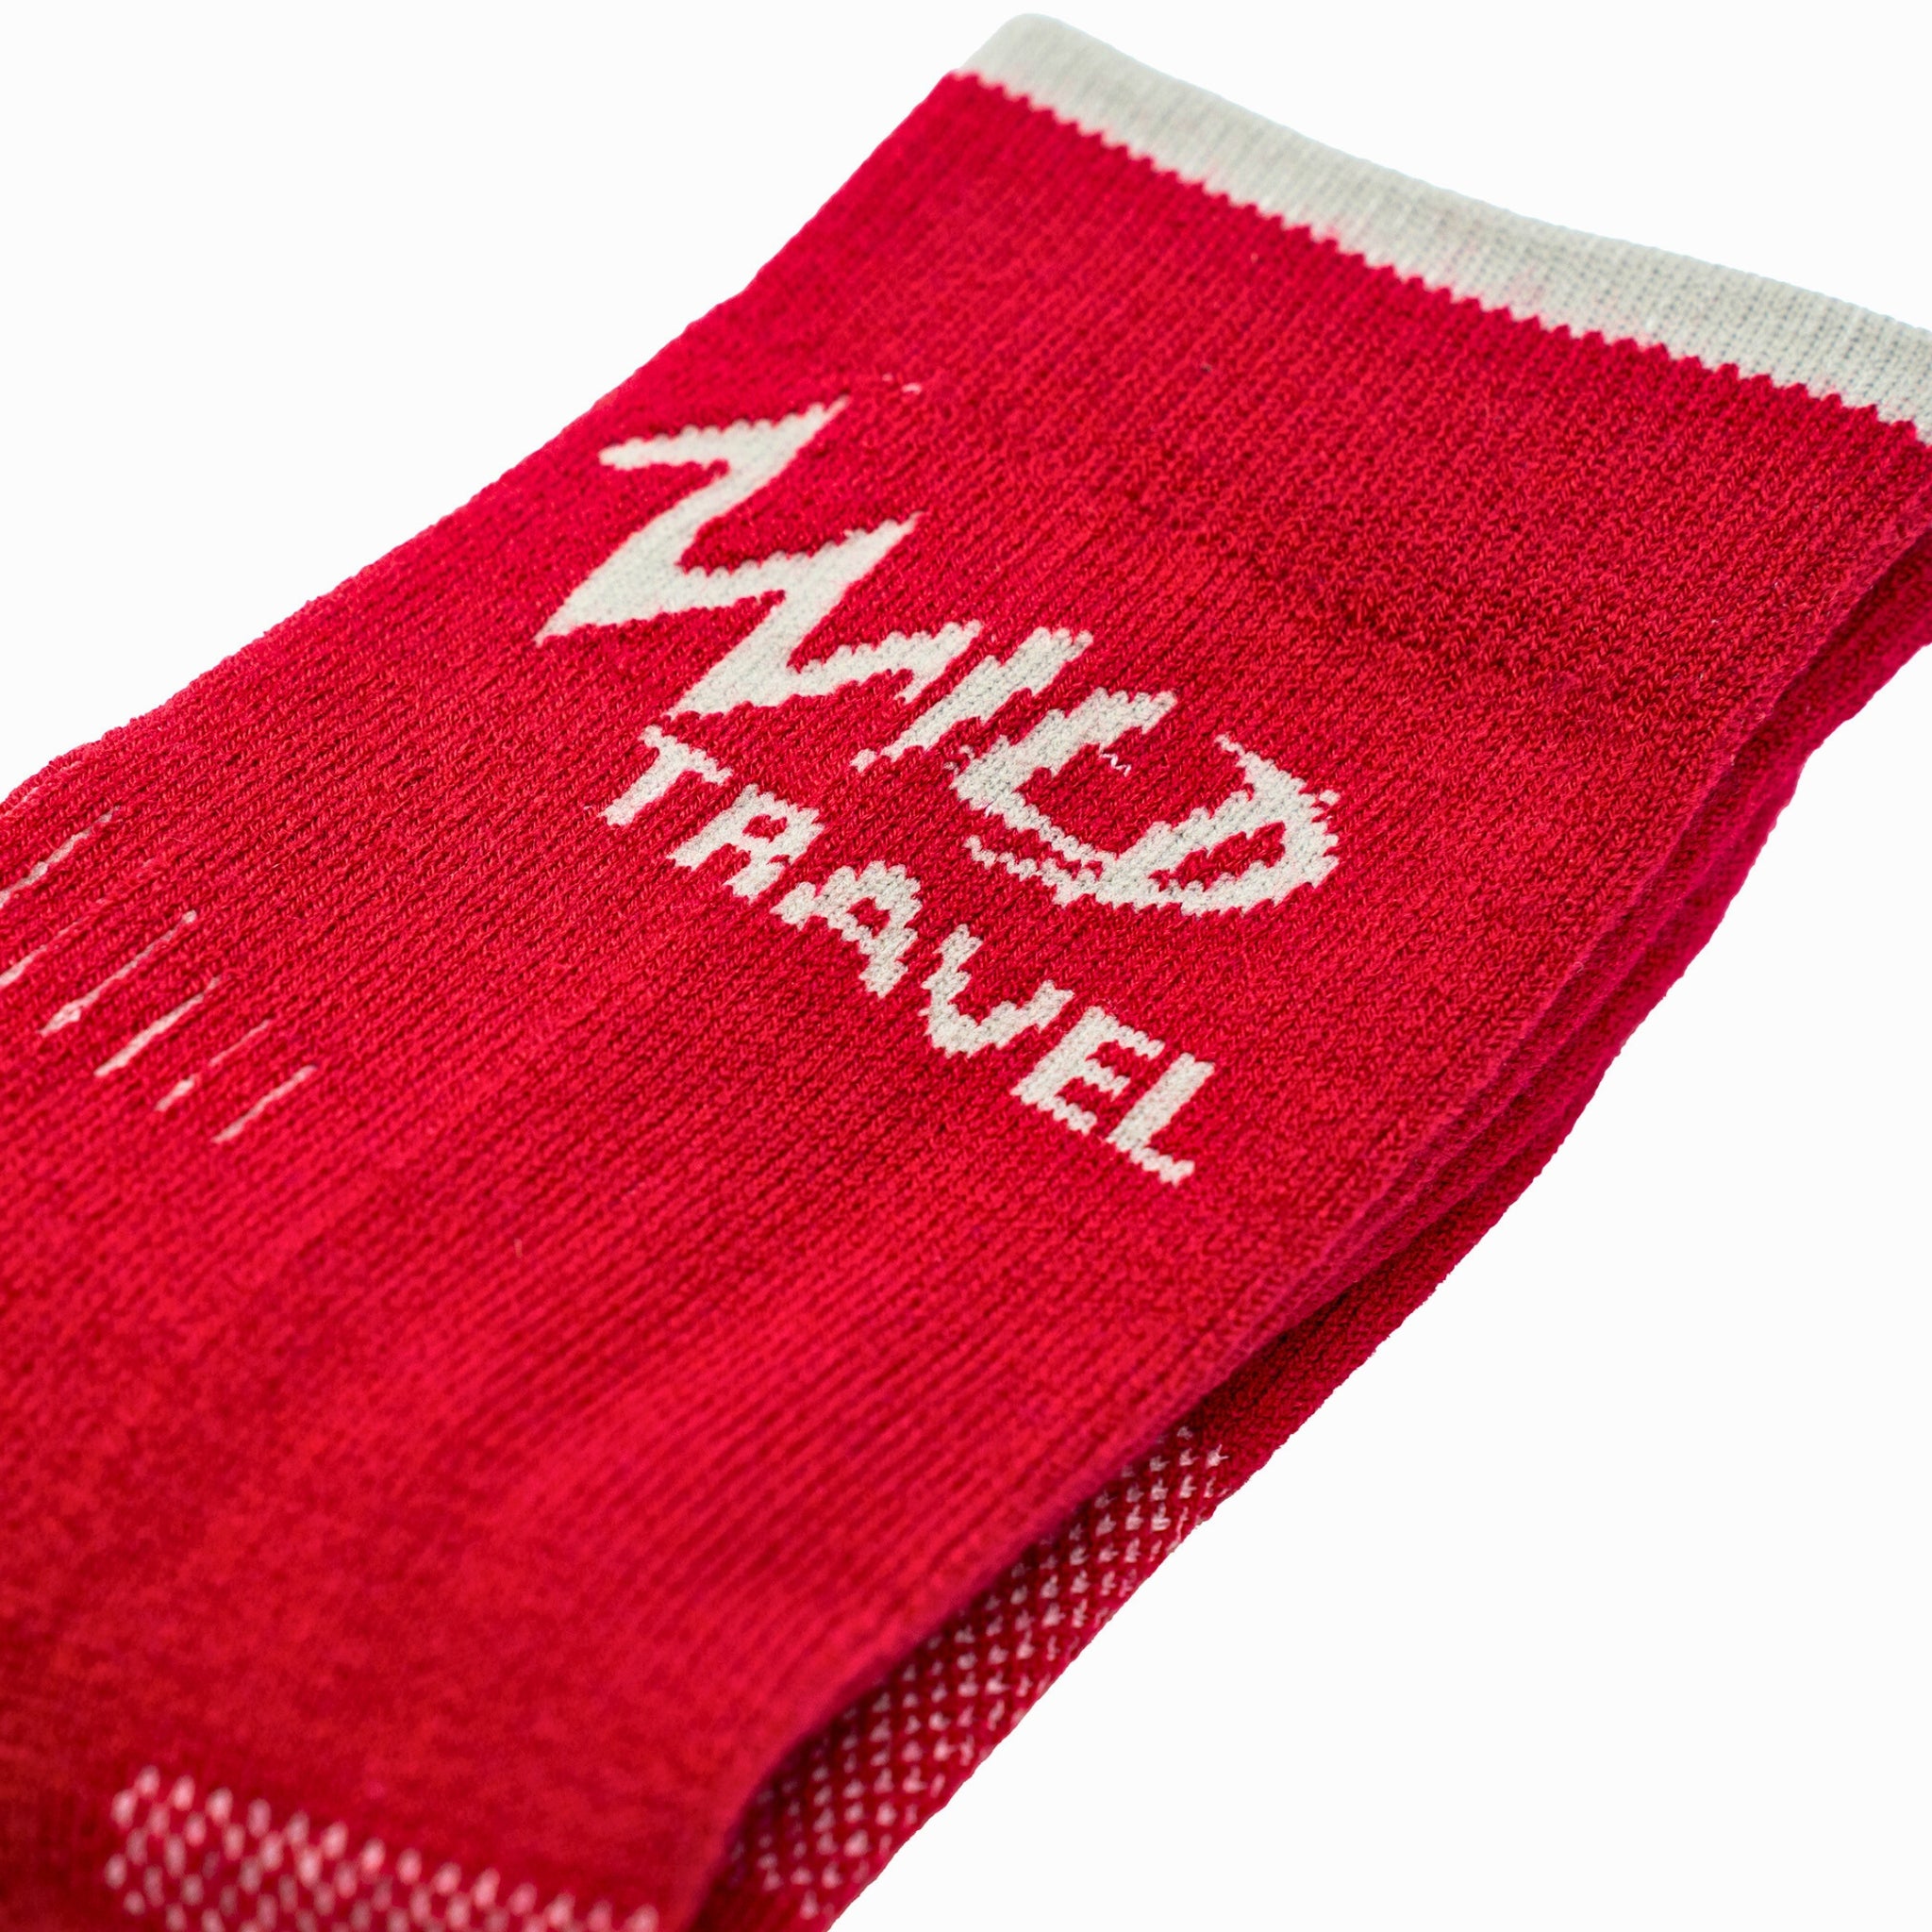  JAVIE Calcetines de compresión de lana merino ultra cálidos  para hombres y mujeres, calcetines acolchados para correr, ciclismo, viajes  (15-20 mmHg), barro rojo : Salud y Hogar